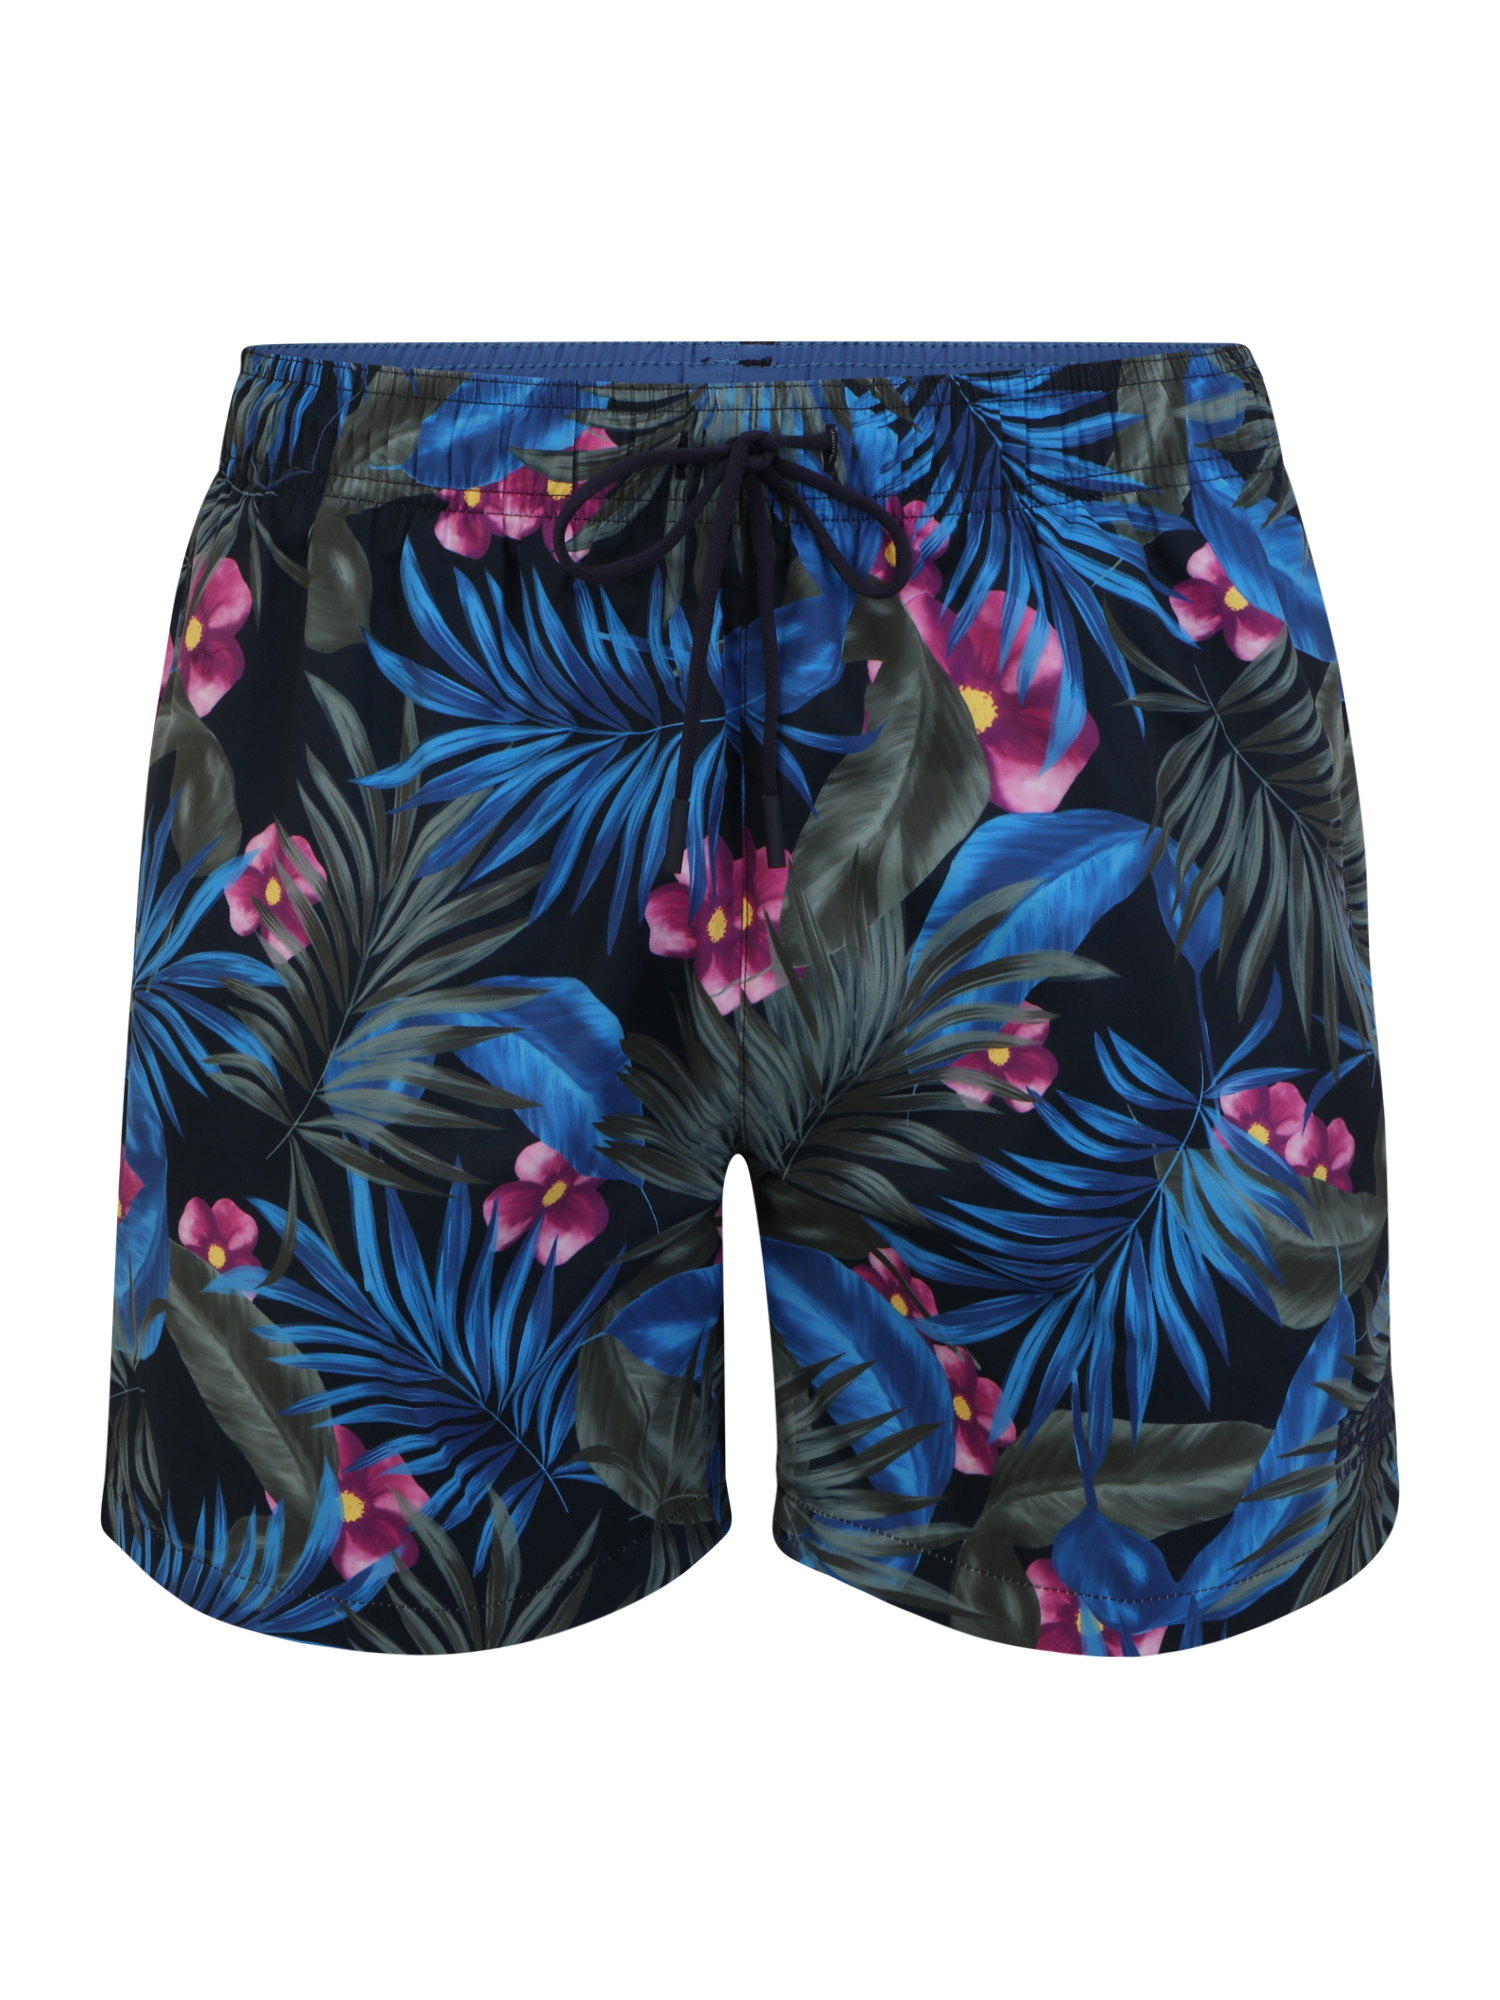 Odzież Bielizna & moda plażowa BOSS Szorty kąpielowe Turtle w kolorze Jasnoniebieski, Ciemny Niebieskim 